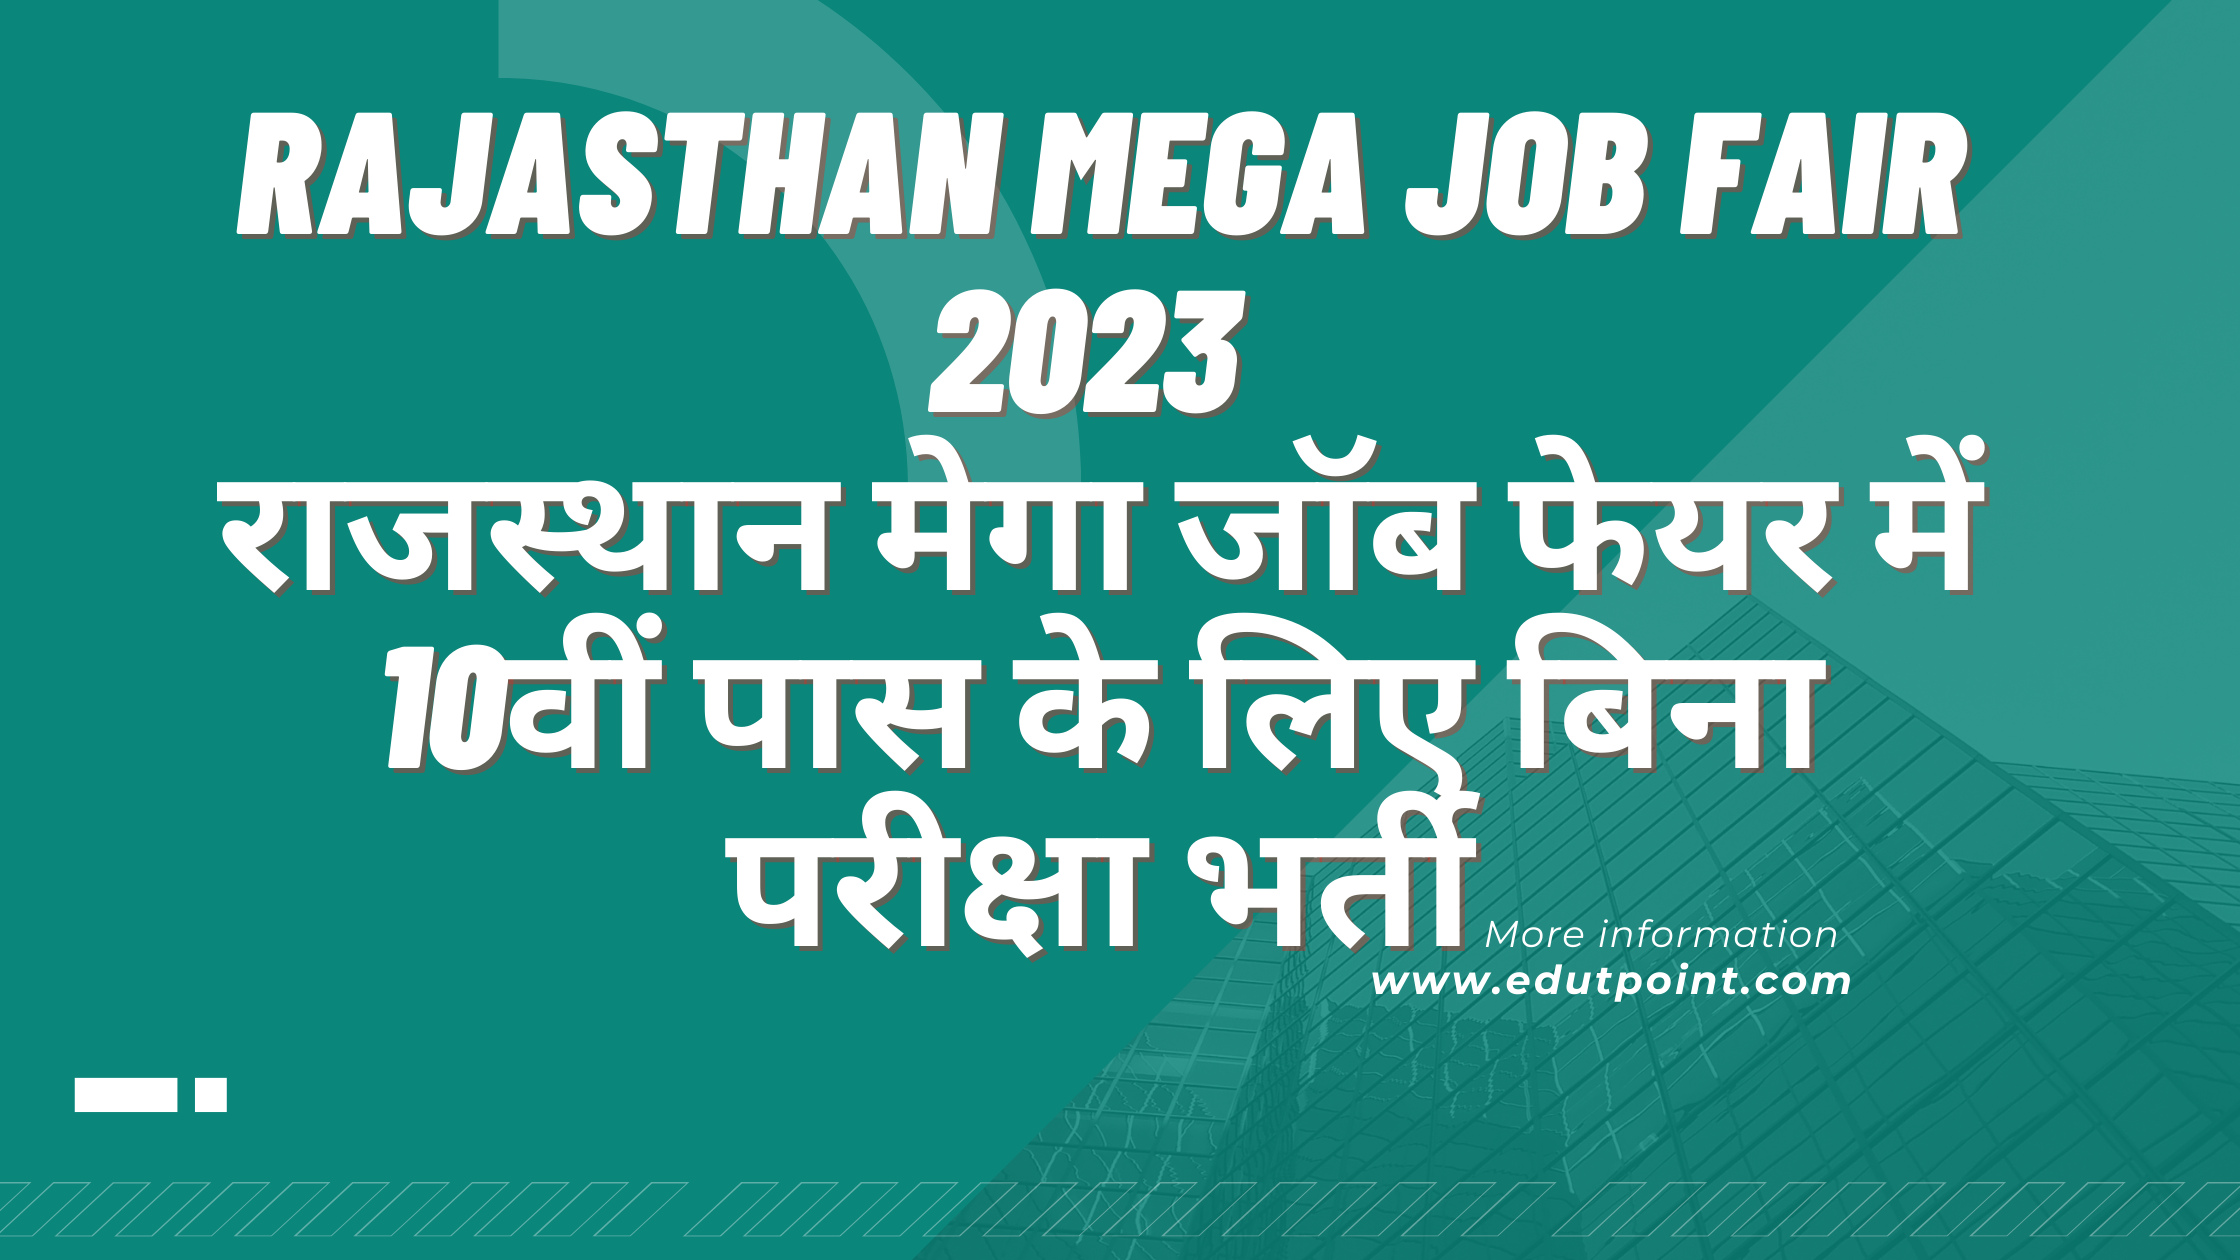 Rajasthan Mega Job Fair 2023 | राजस्थान मेगा जॉब फेयर में 10वीं पास के लिए बिना परीक्षा भर्ती